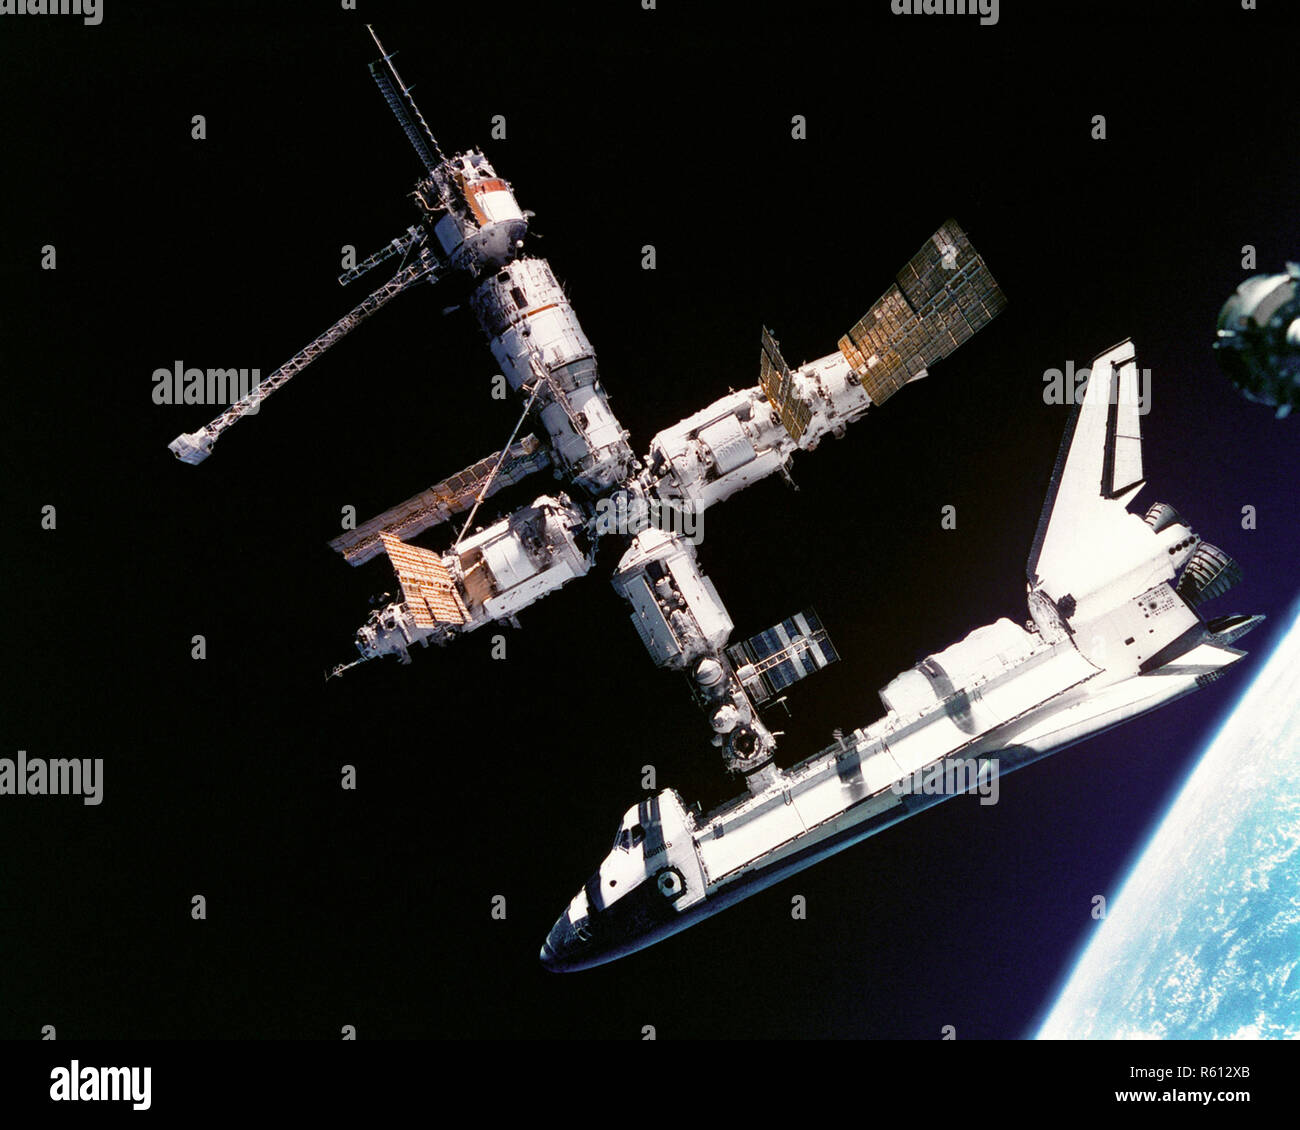 Esta vista del Transbordador Espacial Atlantis sigue conectado a la Estación Espacial Rusa Mir fue fotografiado por la tripulación Mir-19, el 4 de julio de 1995. Los cosmonautas Foto de stock